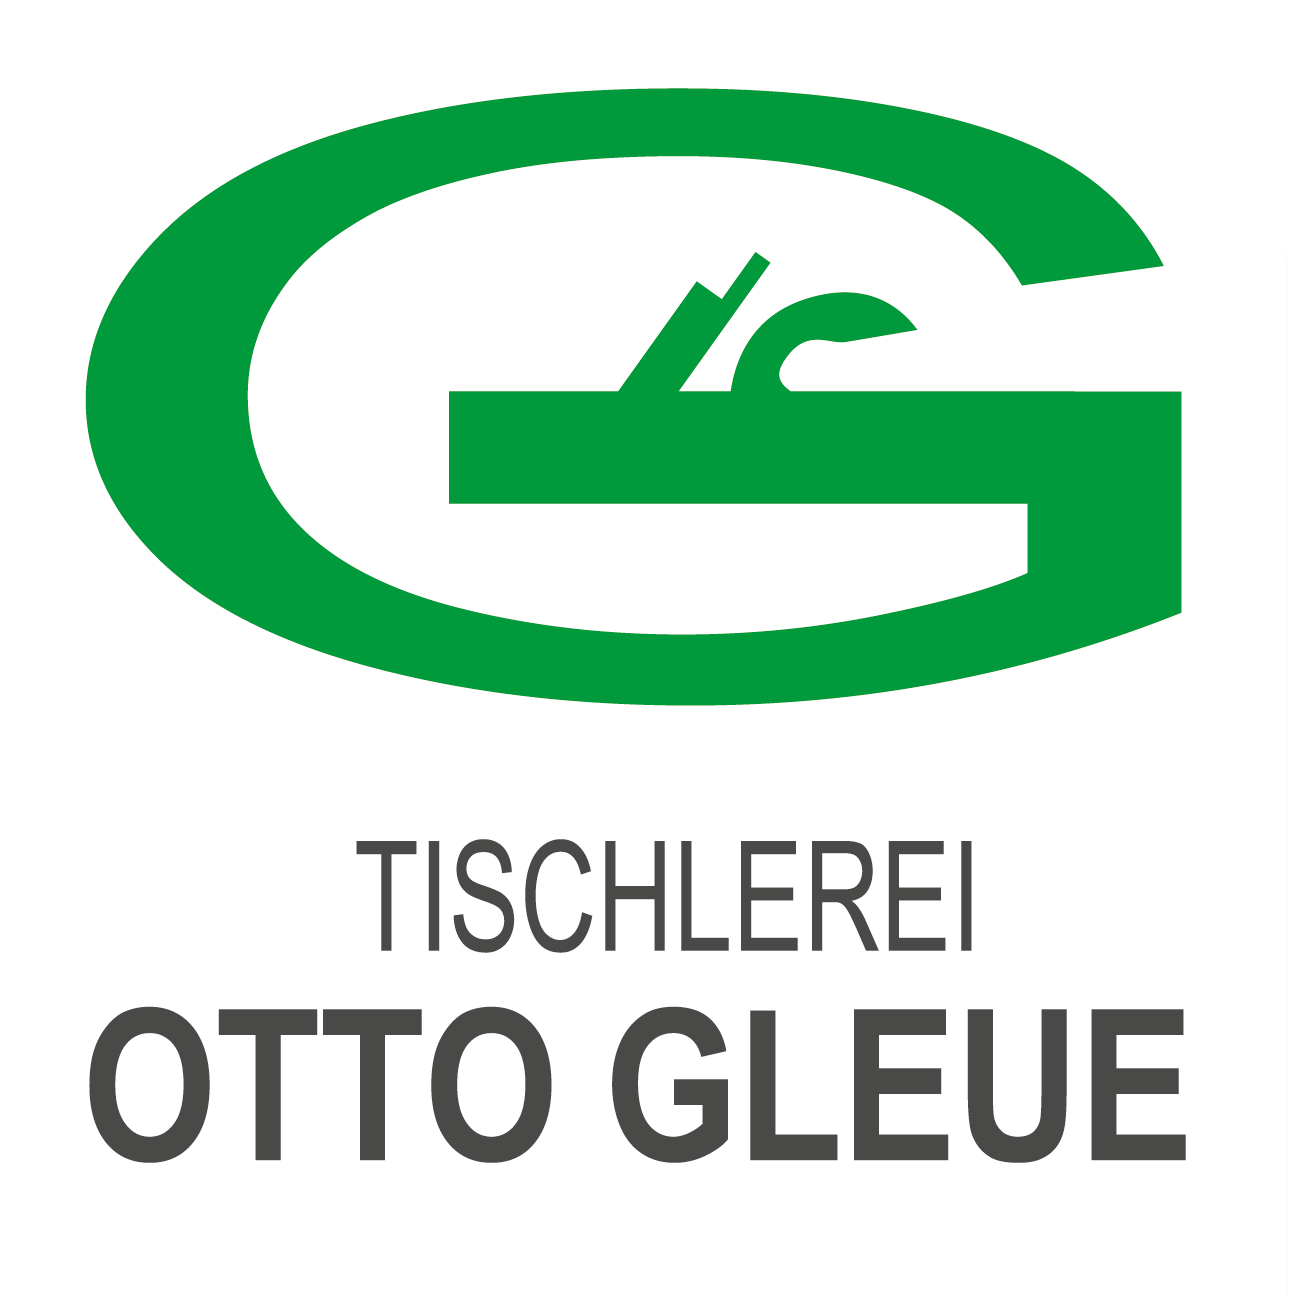 Tischlerei Otto Gleue e.K.